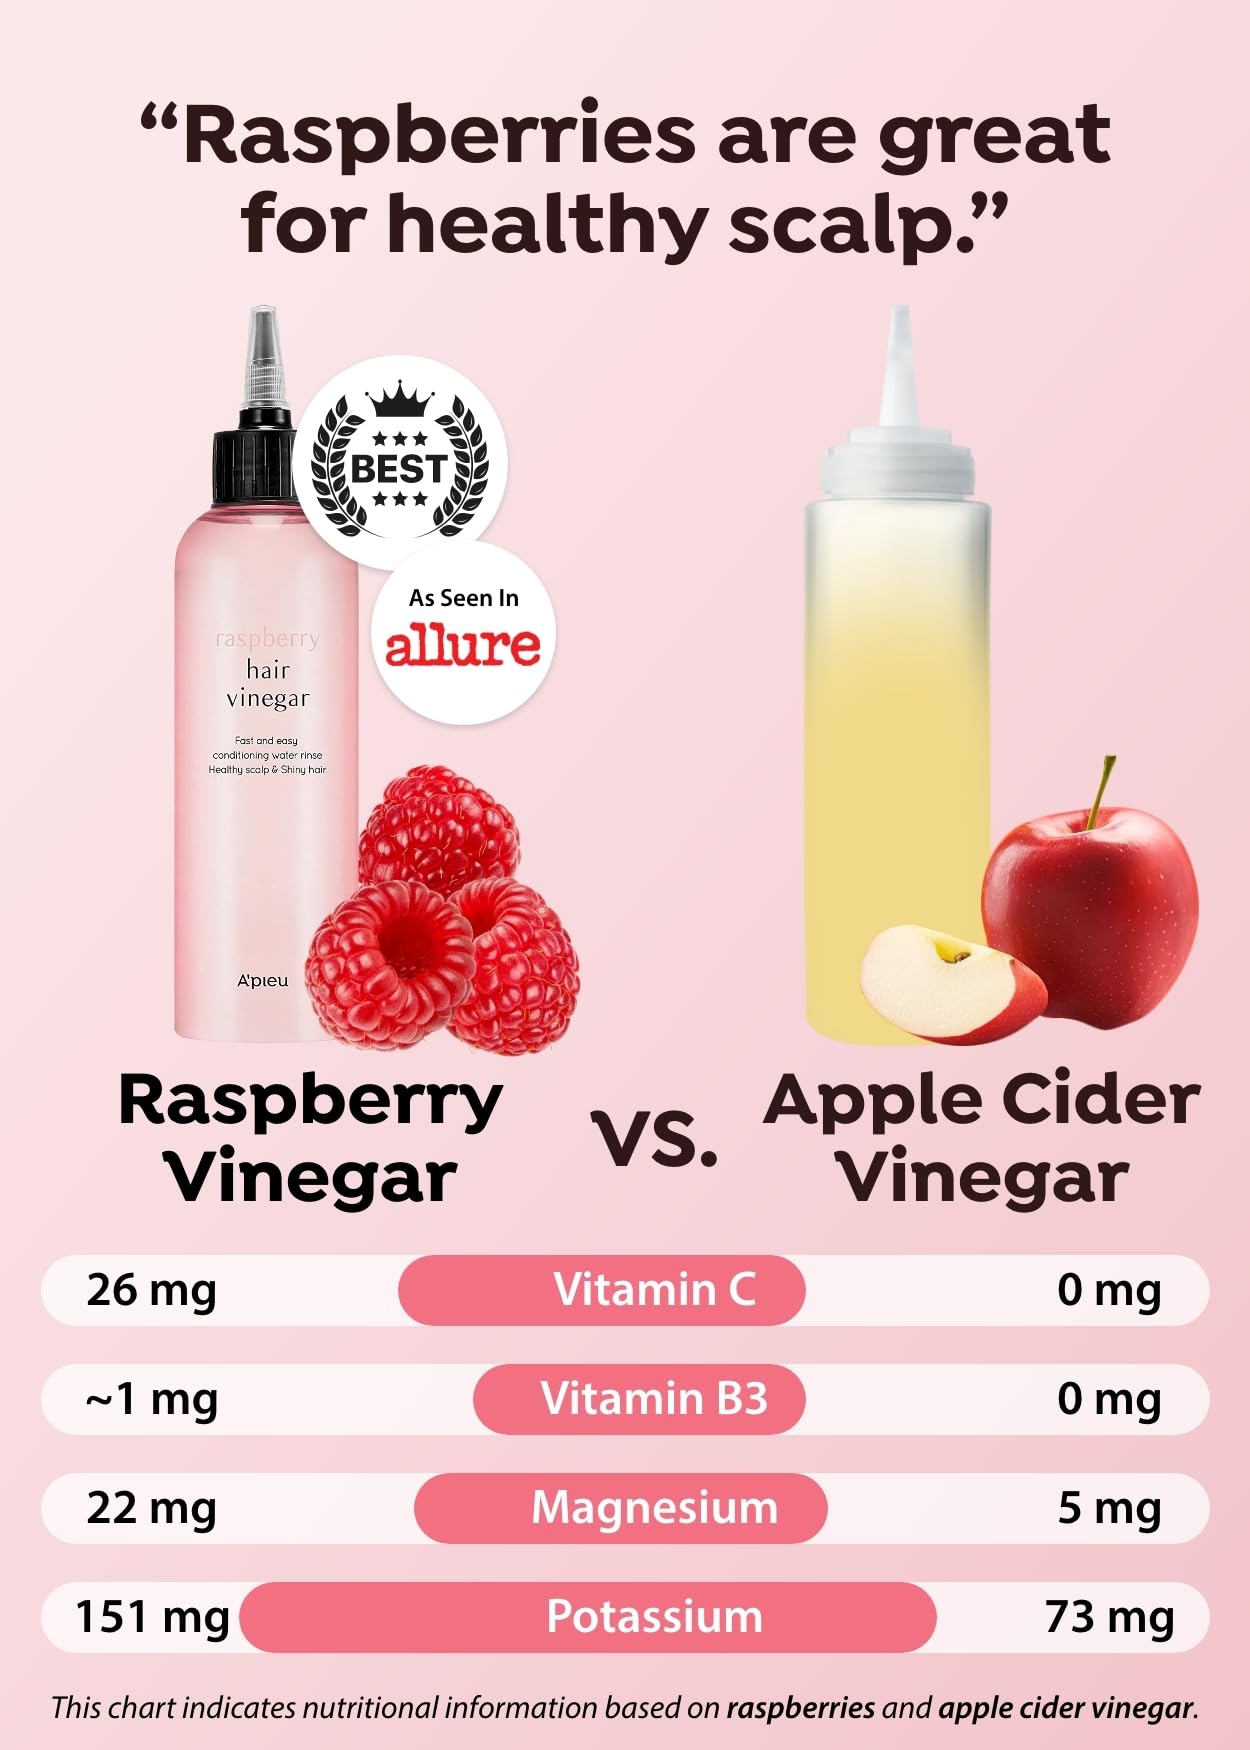 A’PIEU Raspberry Hair Vinegar Rinse 6.76 Fl oz - Scalp Treatment for Balanced pH, Shiny Hair | Clarifies & Encourages Growth | Dandruff & Oil Control